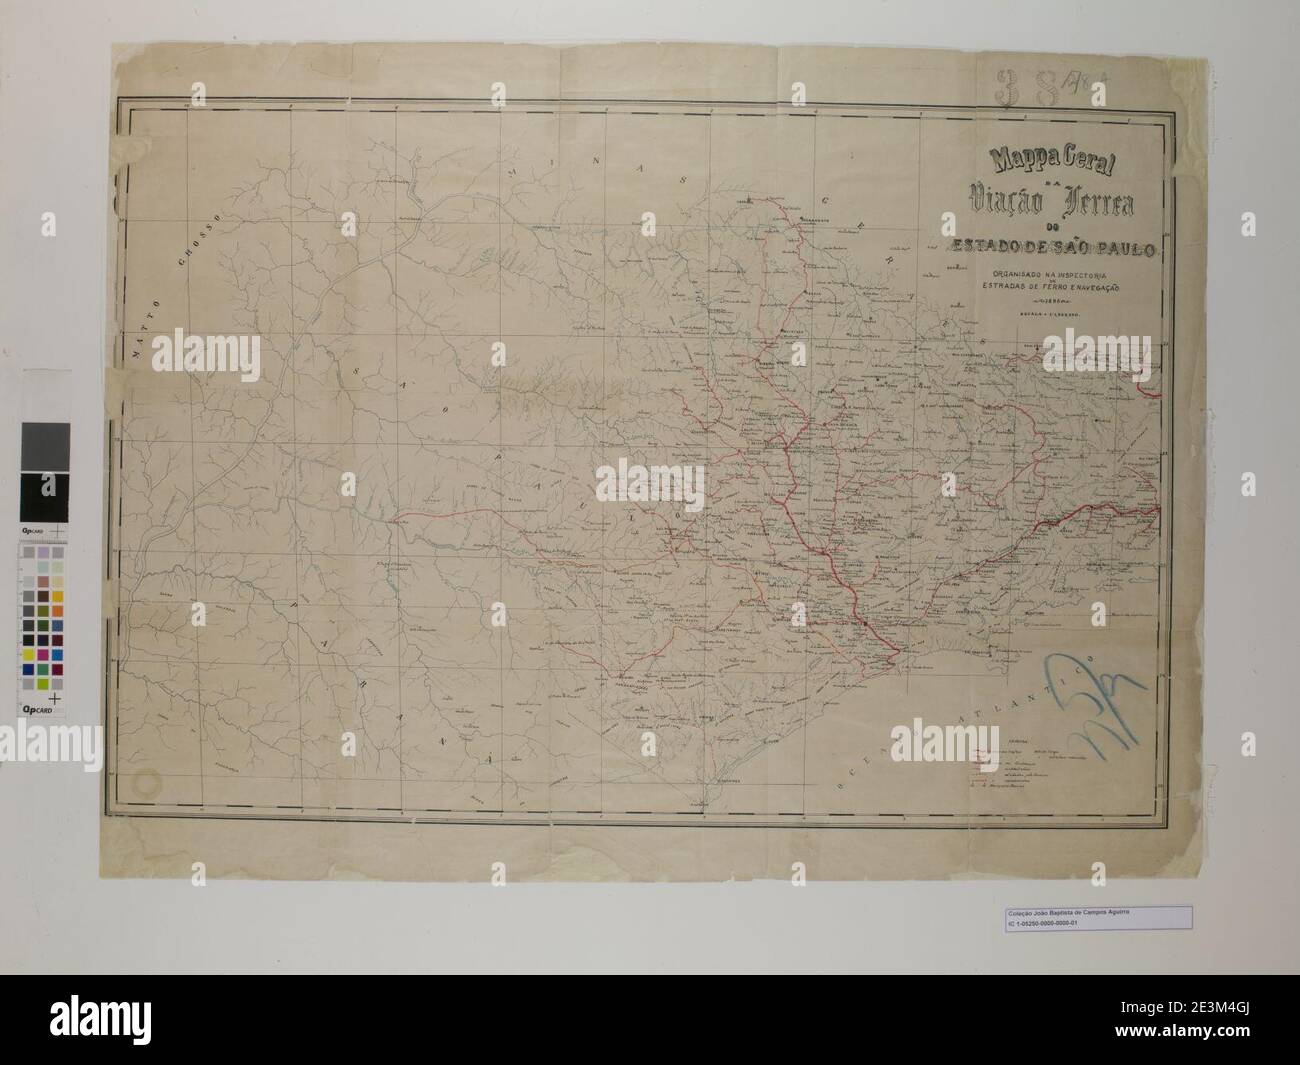 Mapa Geral da Viação Férrea do Estado de São Paulo Organizado na Inspetoria de Estradas de Ferro e Navegação 1896 Stock Photo